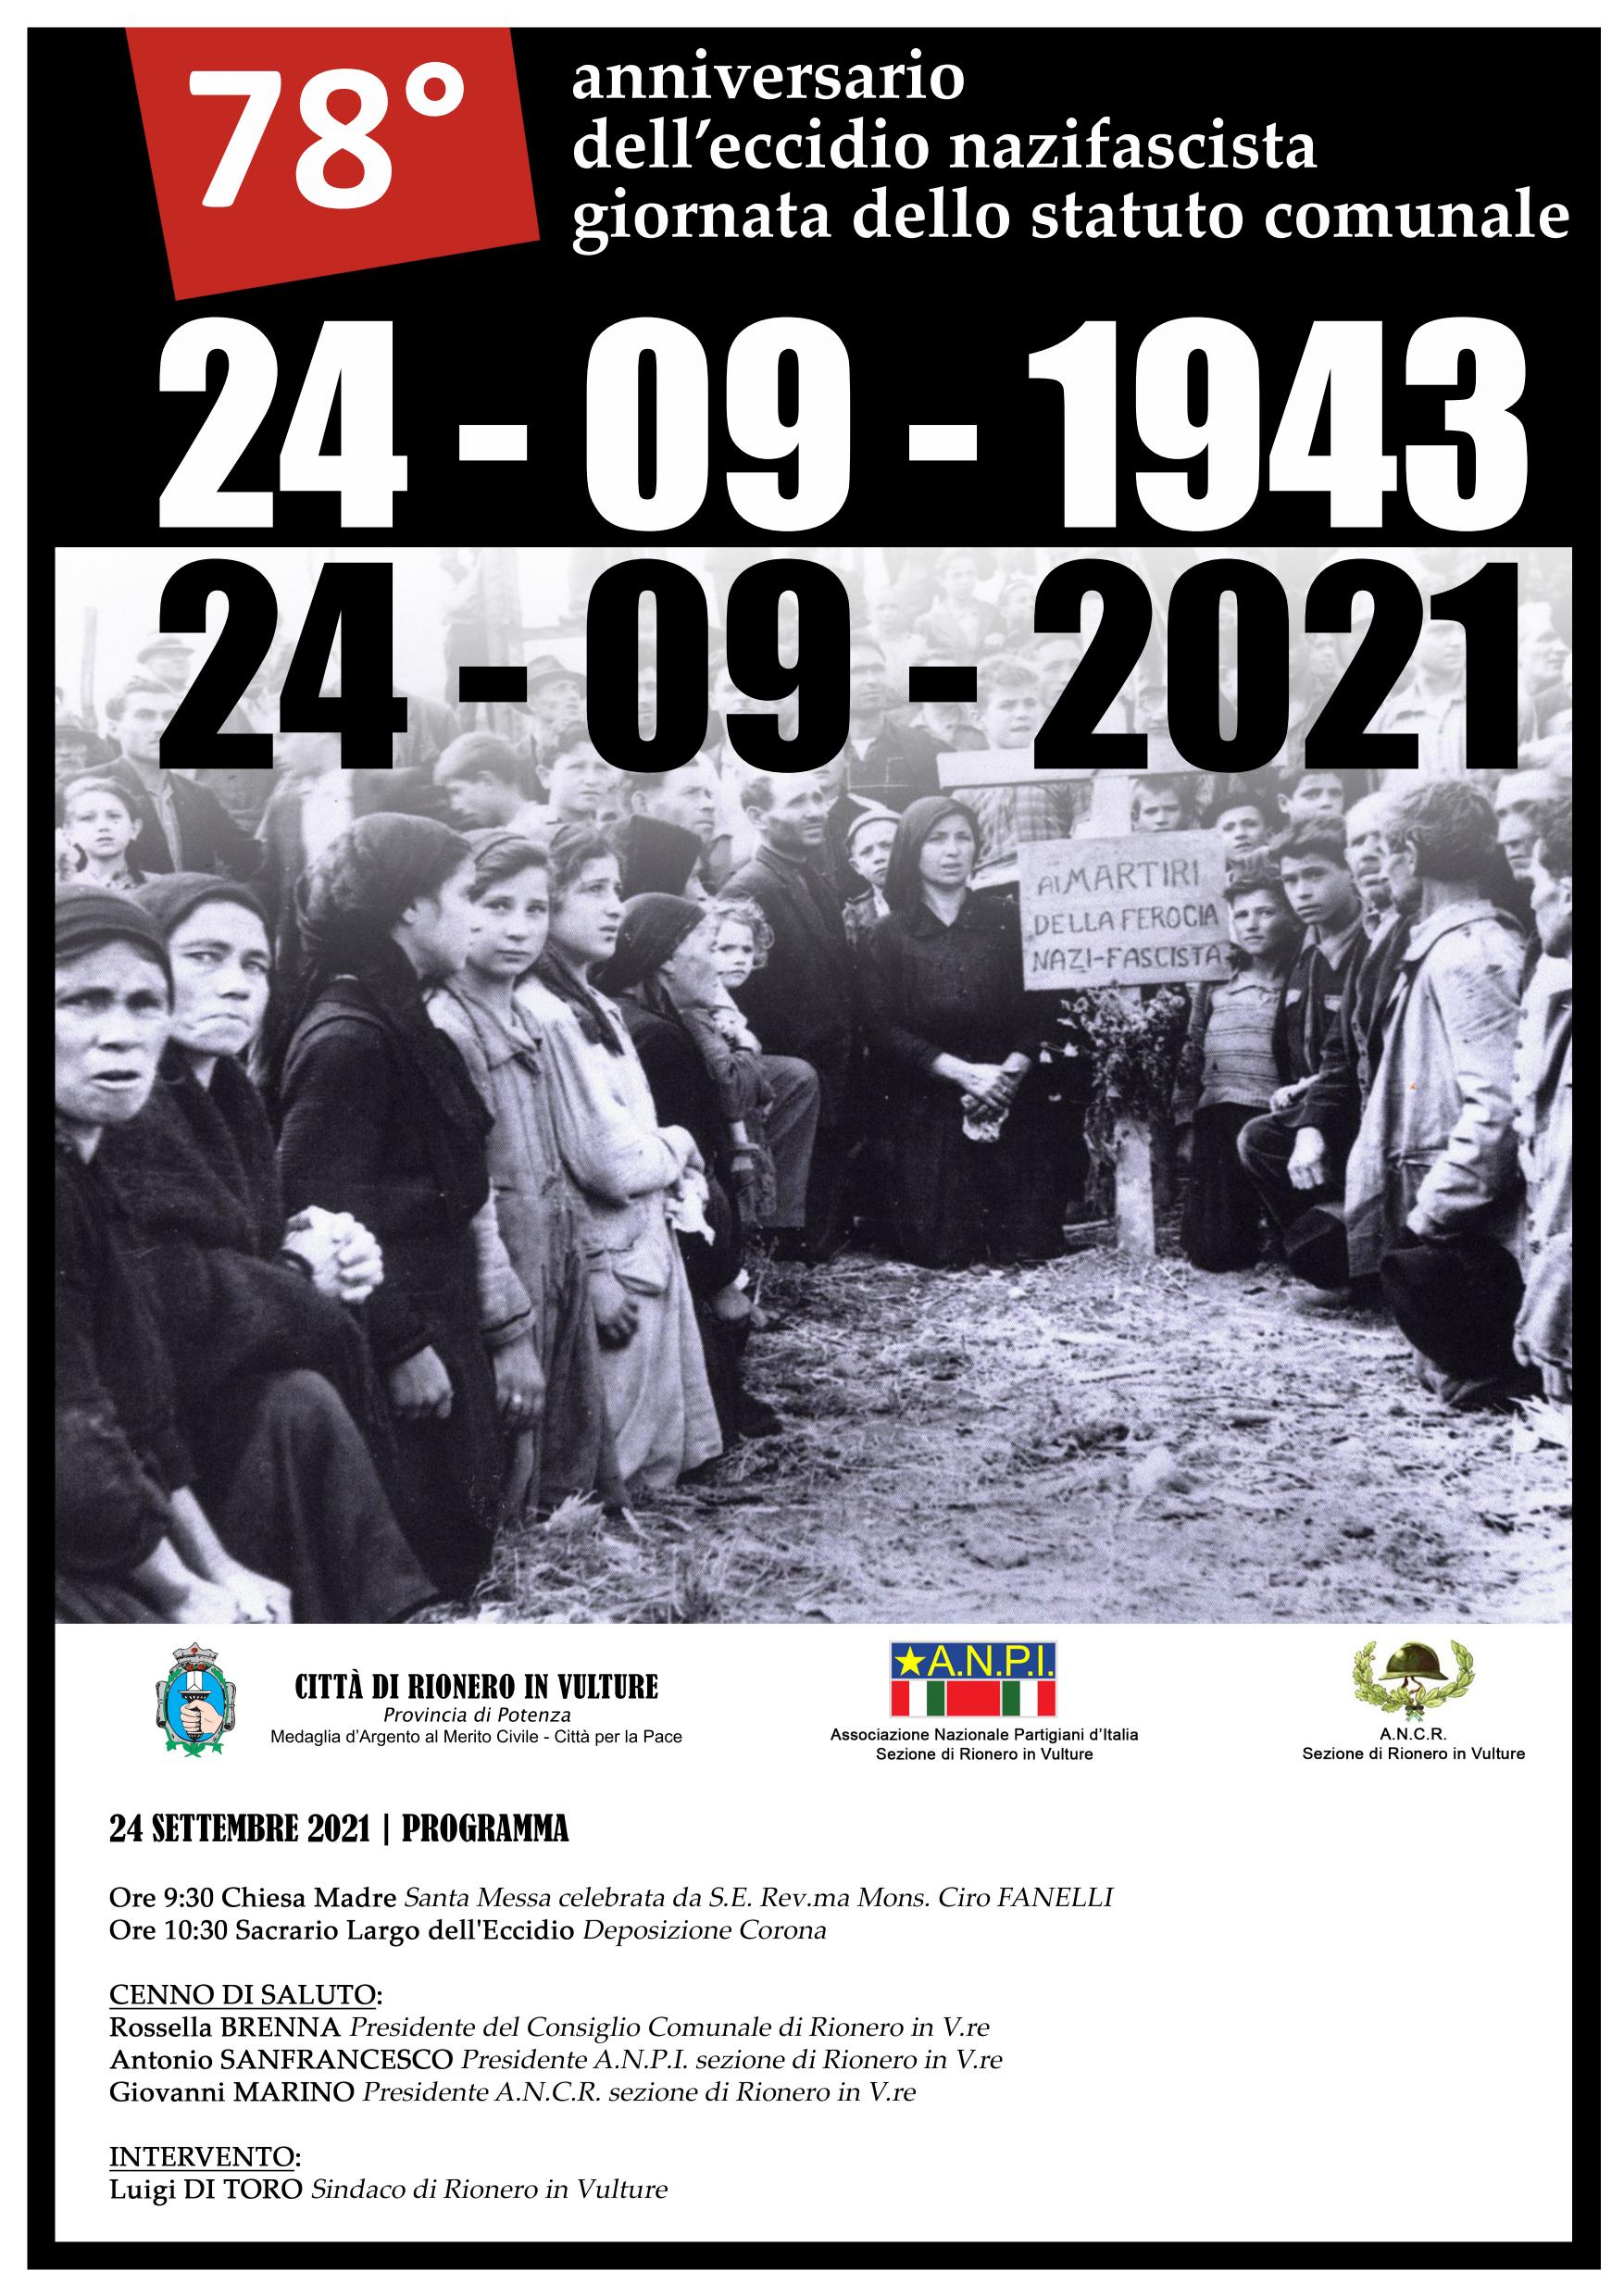 24 settembre 78 anniversario eccidio fascista